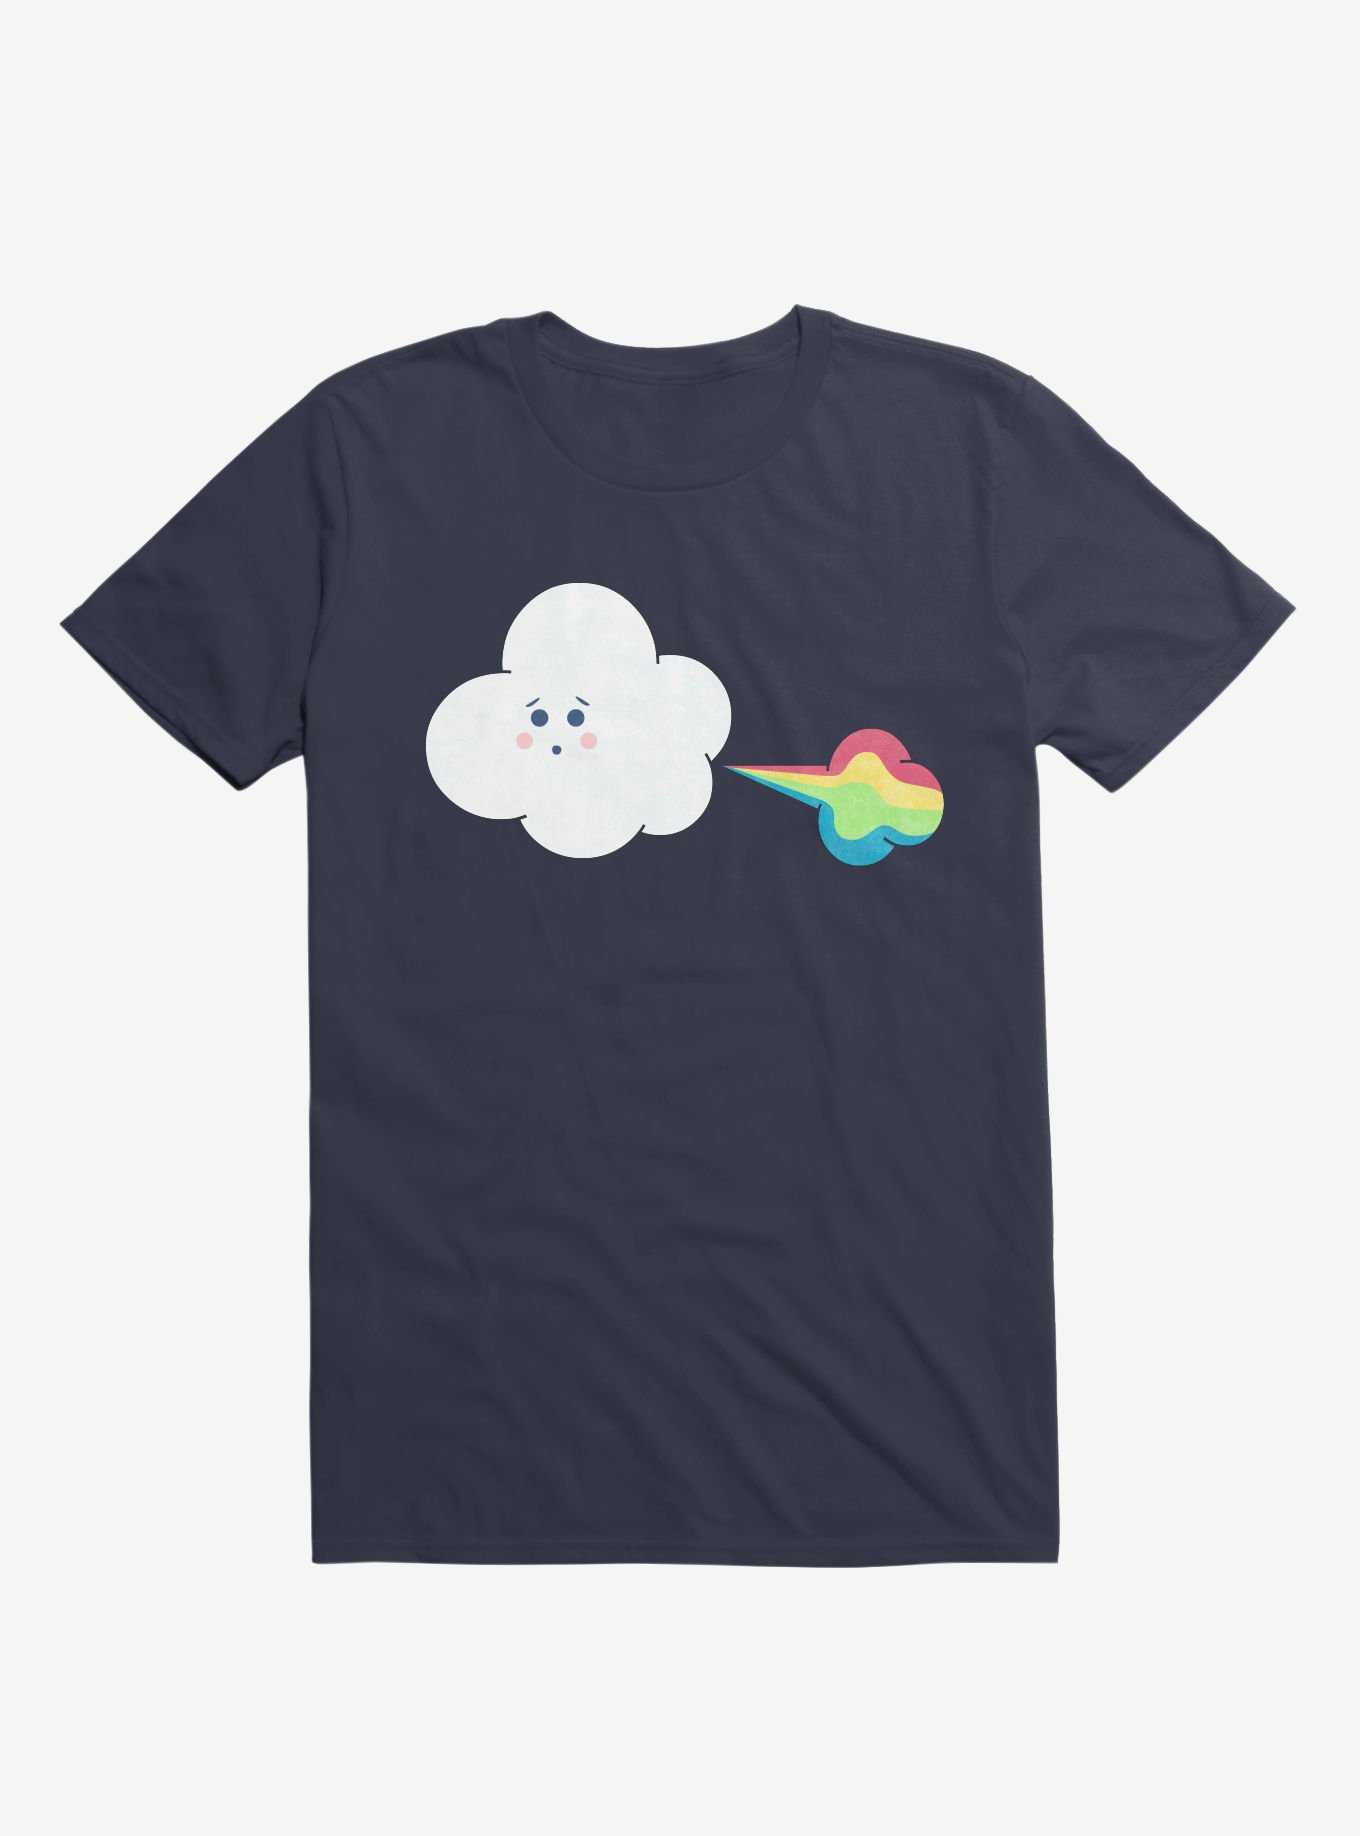 Cloud Oops Rainbow Navy Blue T-Shirt, , hi-res